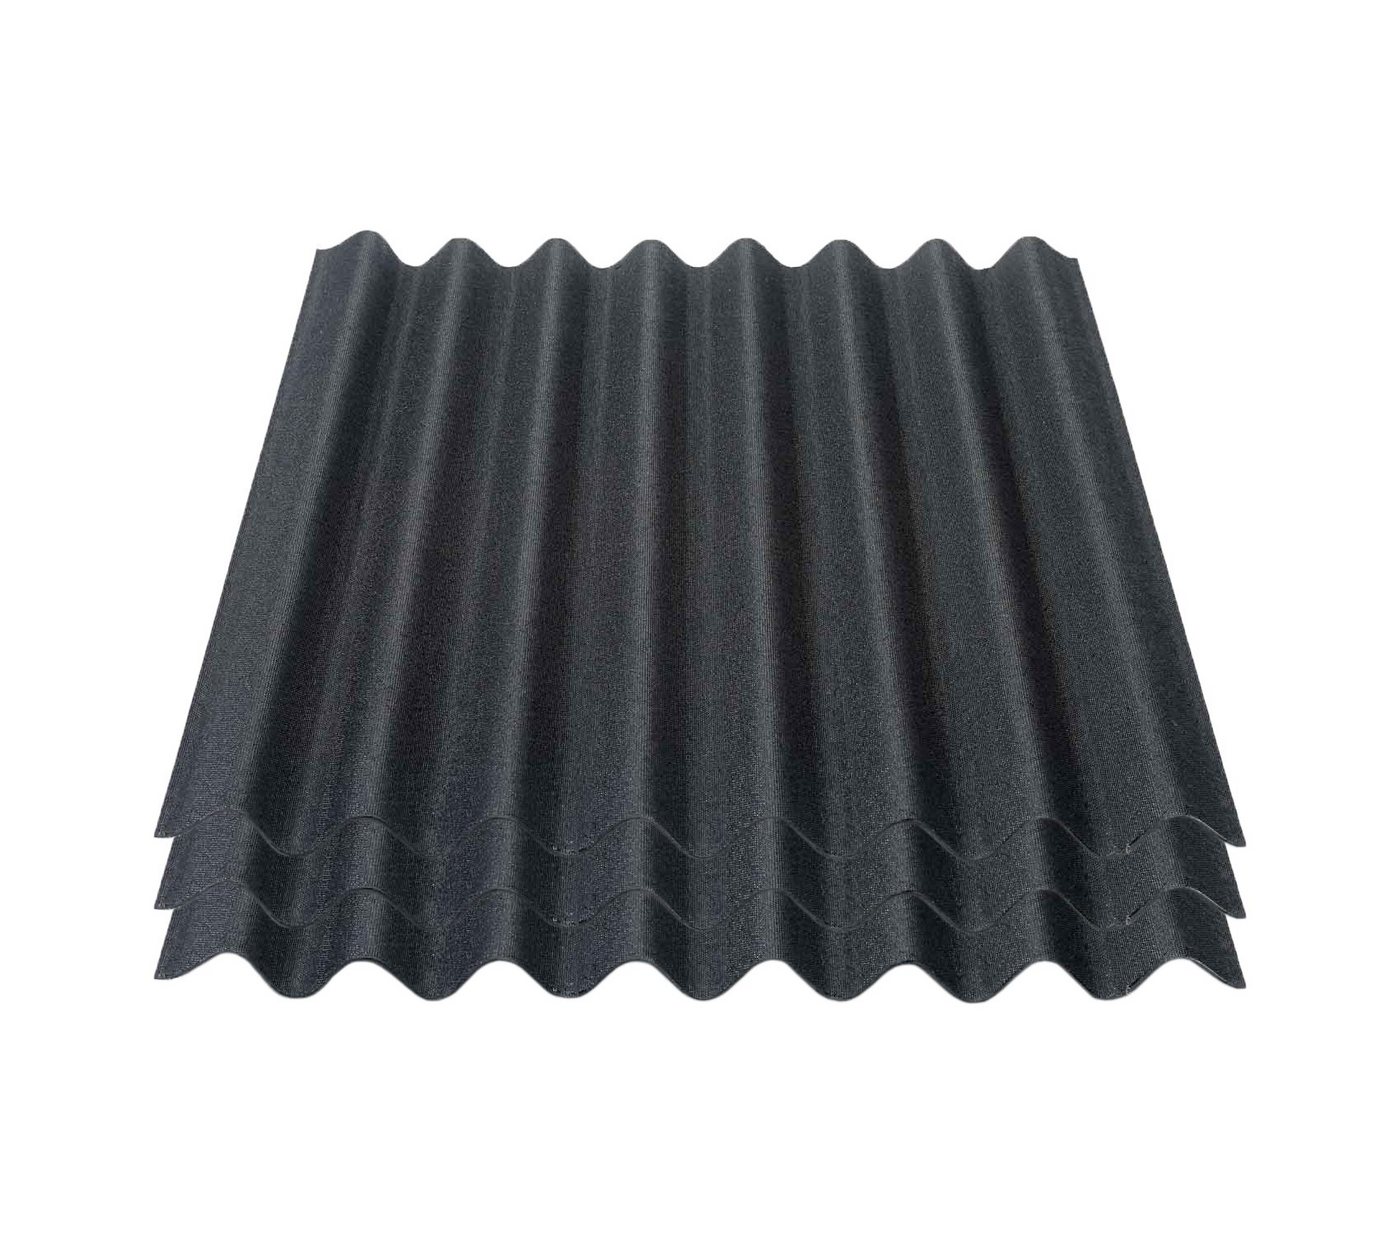 Onduline Dachpappe Onduline Easyline Dachplatte Wandplatte Bitumenwellplatten Wellplatte 3x0,76m² - schwarz, wellig, 2.28 m² pro Paket, (3-St) von Onduline